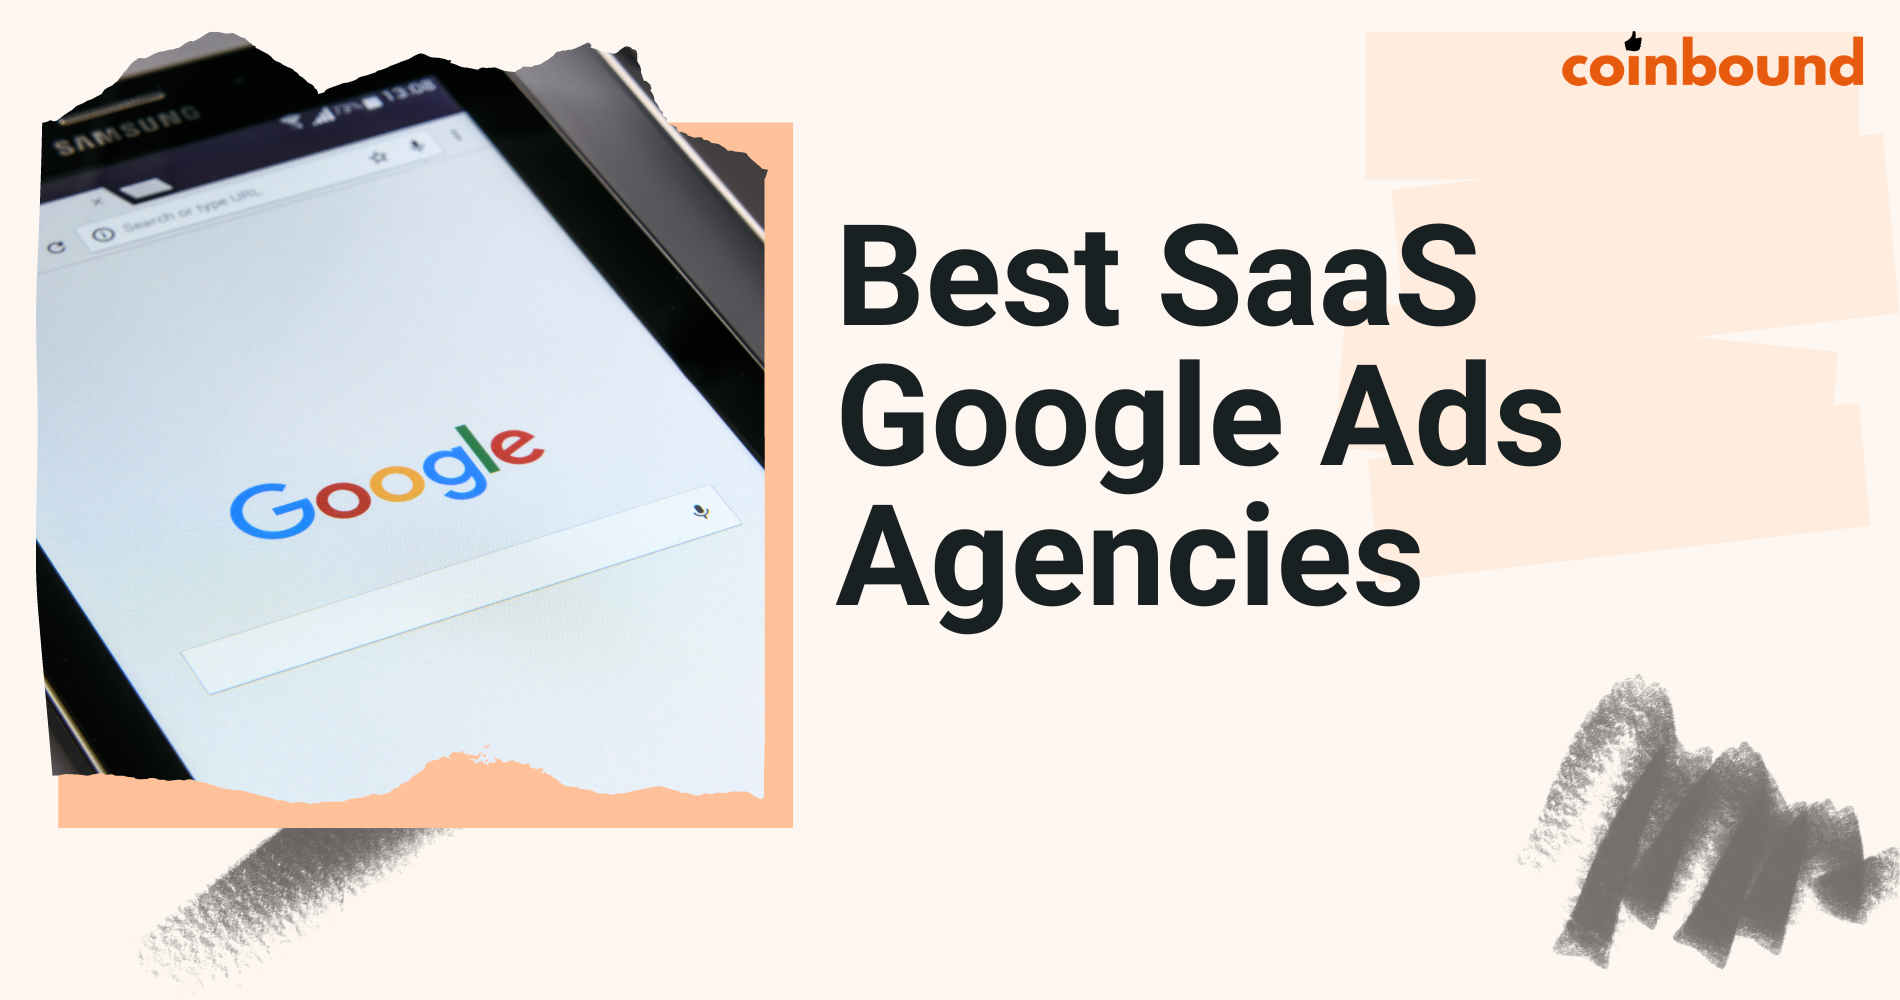 Google ads for saas companies